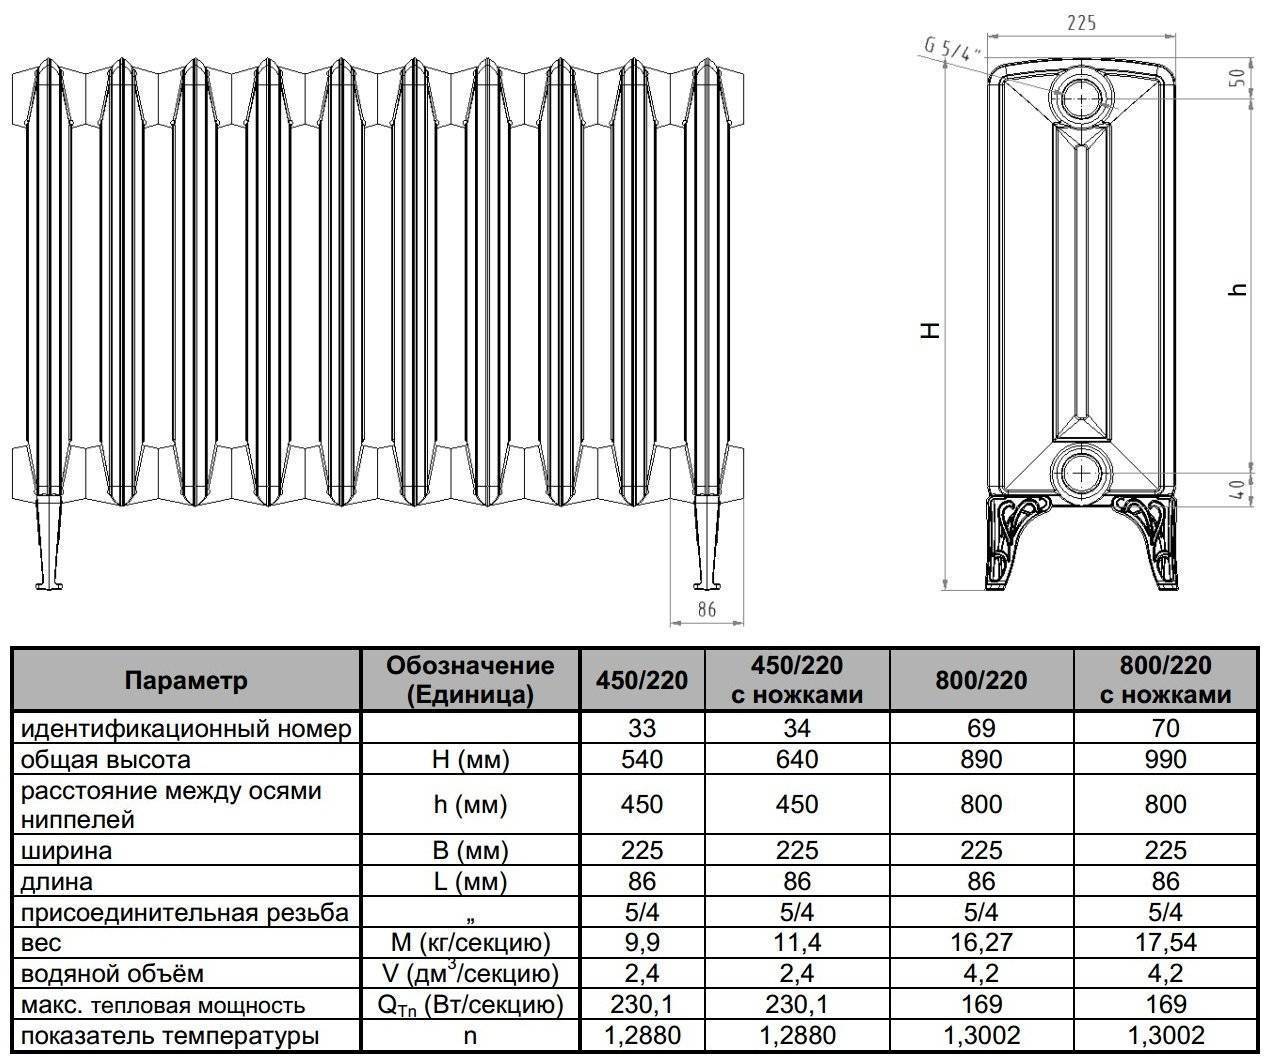 Снип расчет количества секций радиаторов отопления по объему помещения. расчет количества секций батареи | дачная жизнь